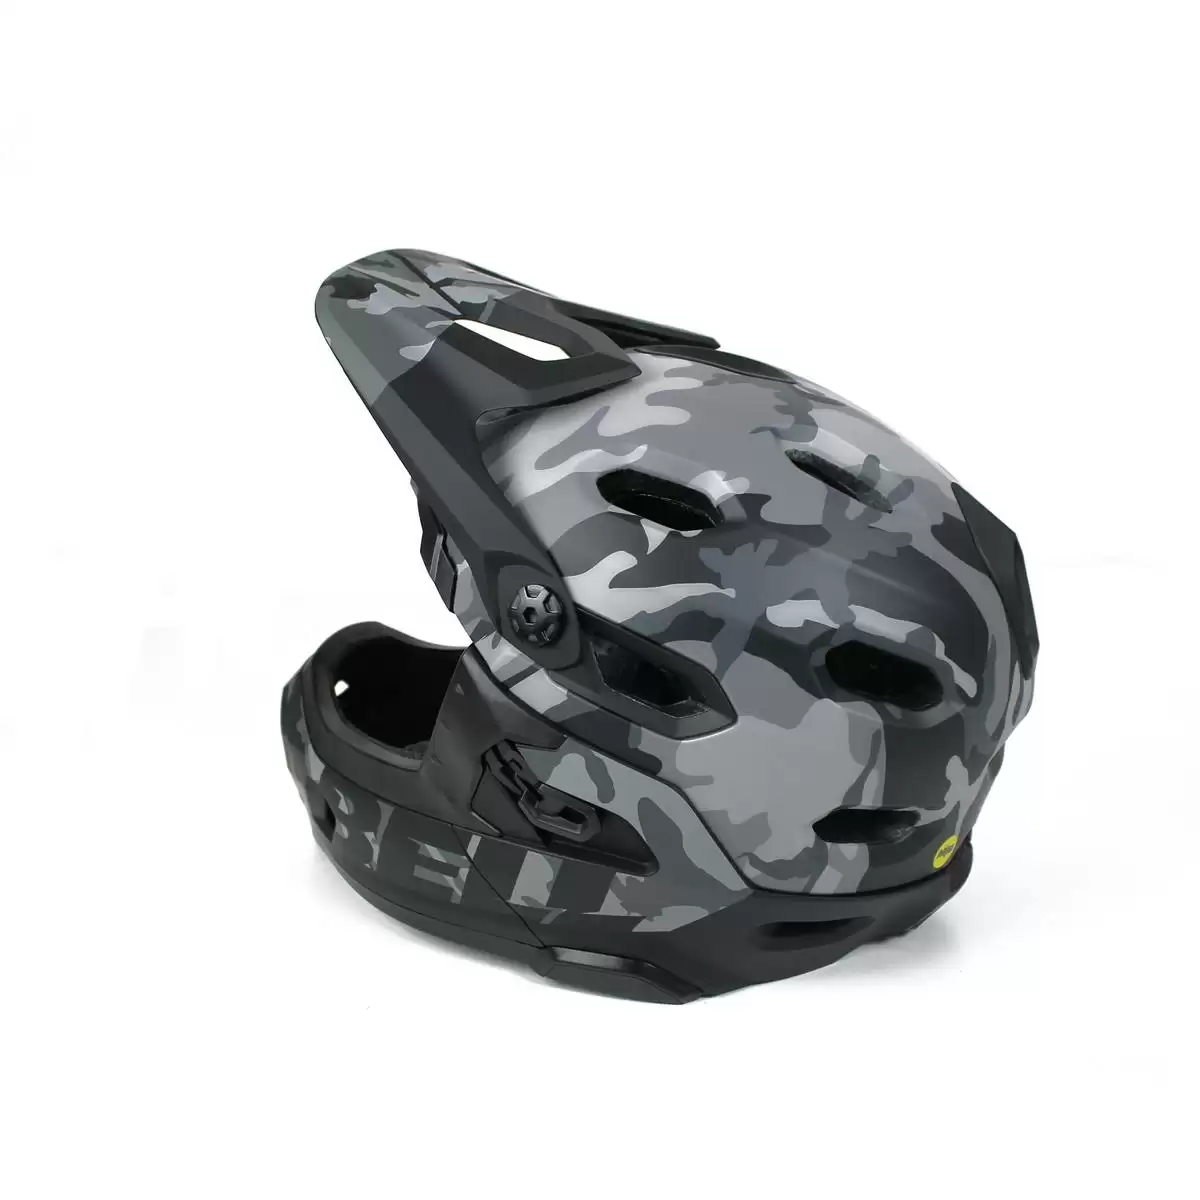 Helm Super DH MIPS Black Camo Größe L (59-62cm) #6